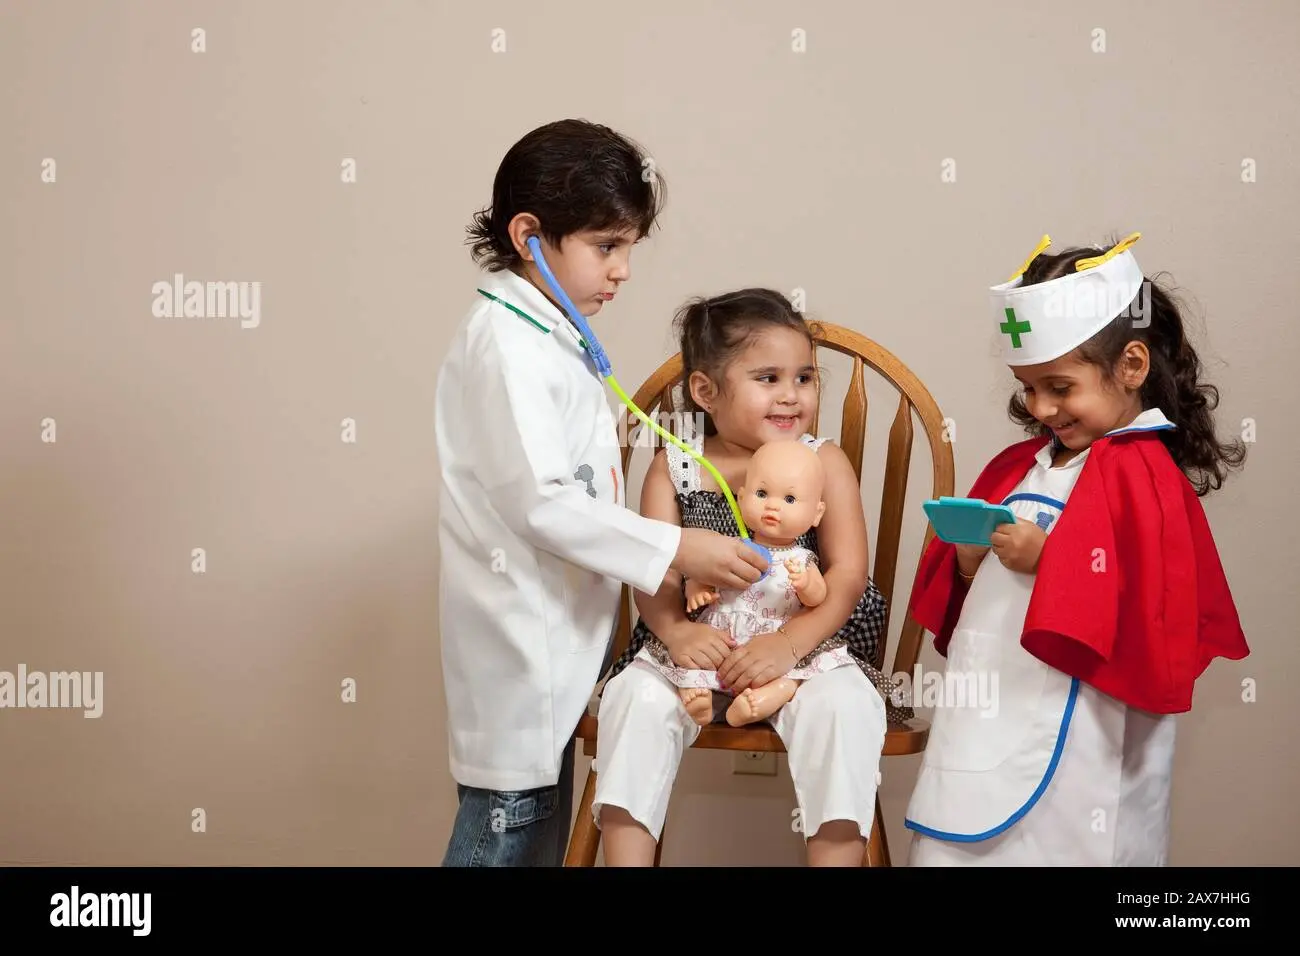 niños jugando a doctores - Cómo se llama el doctor de los niños